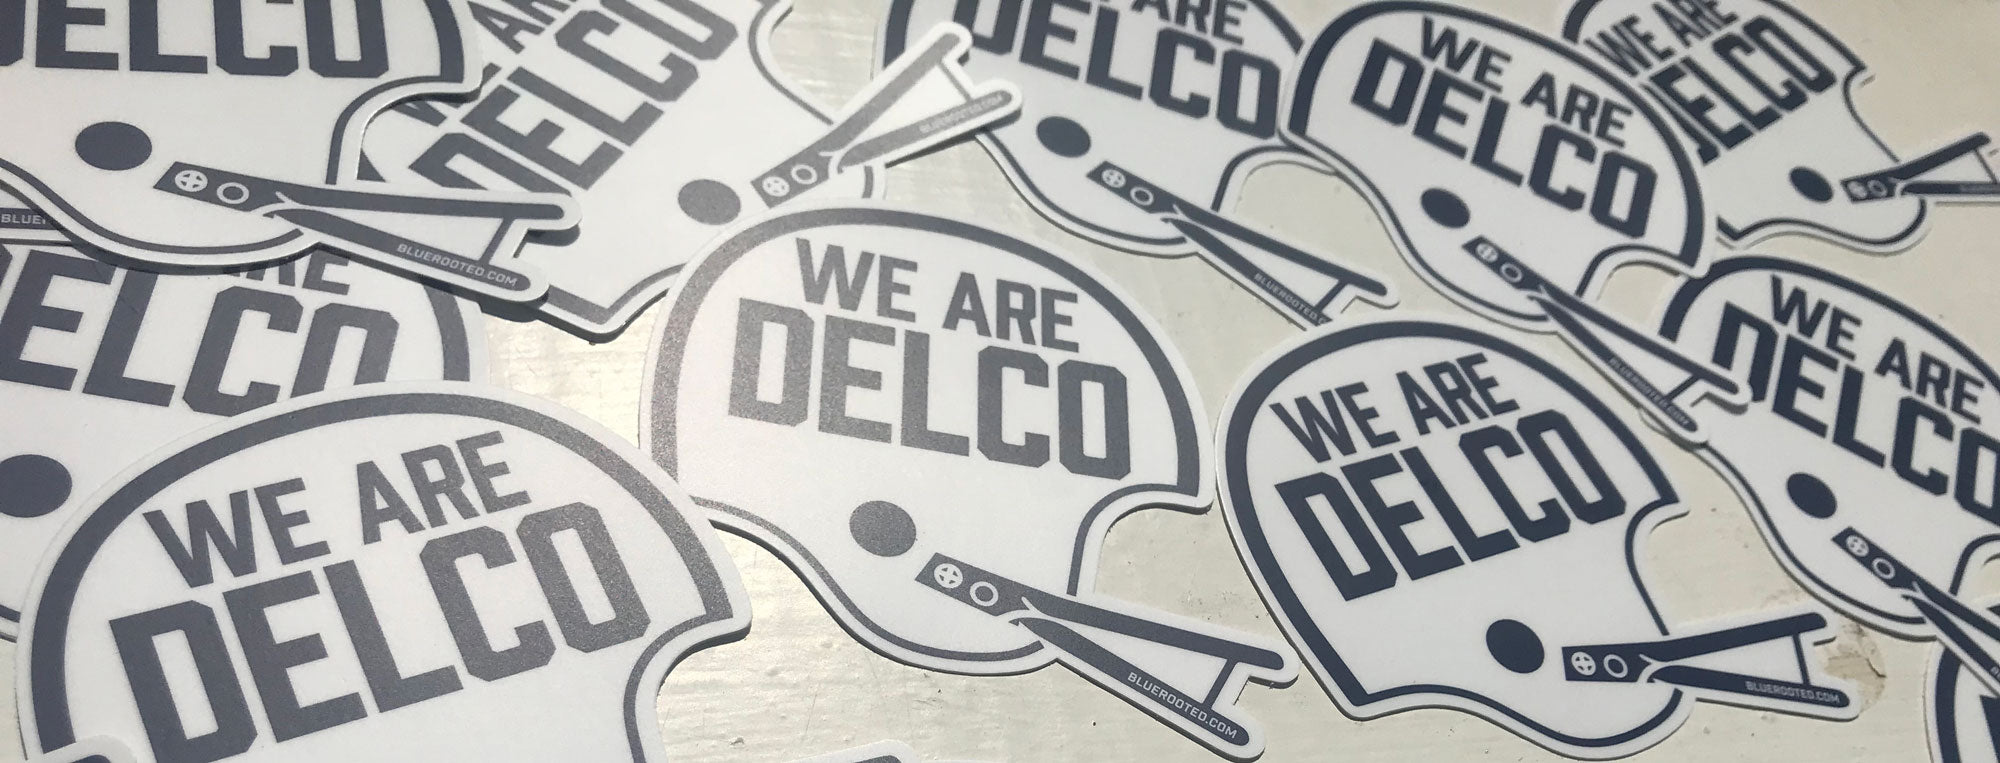 We Are DELCO